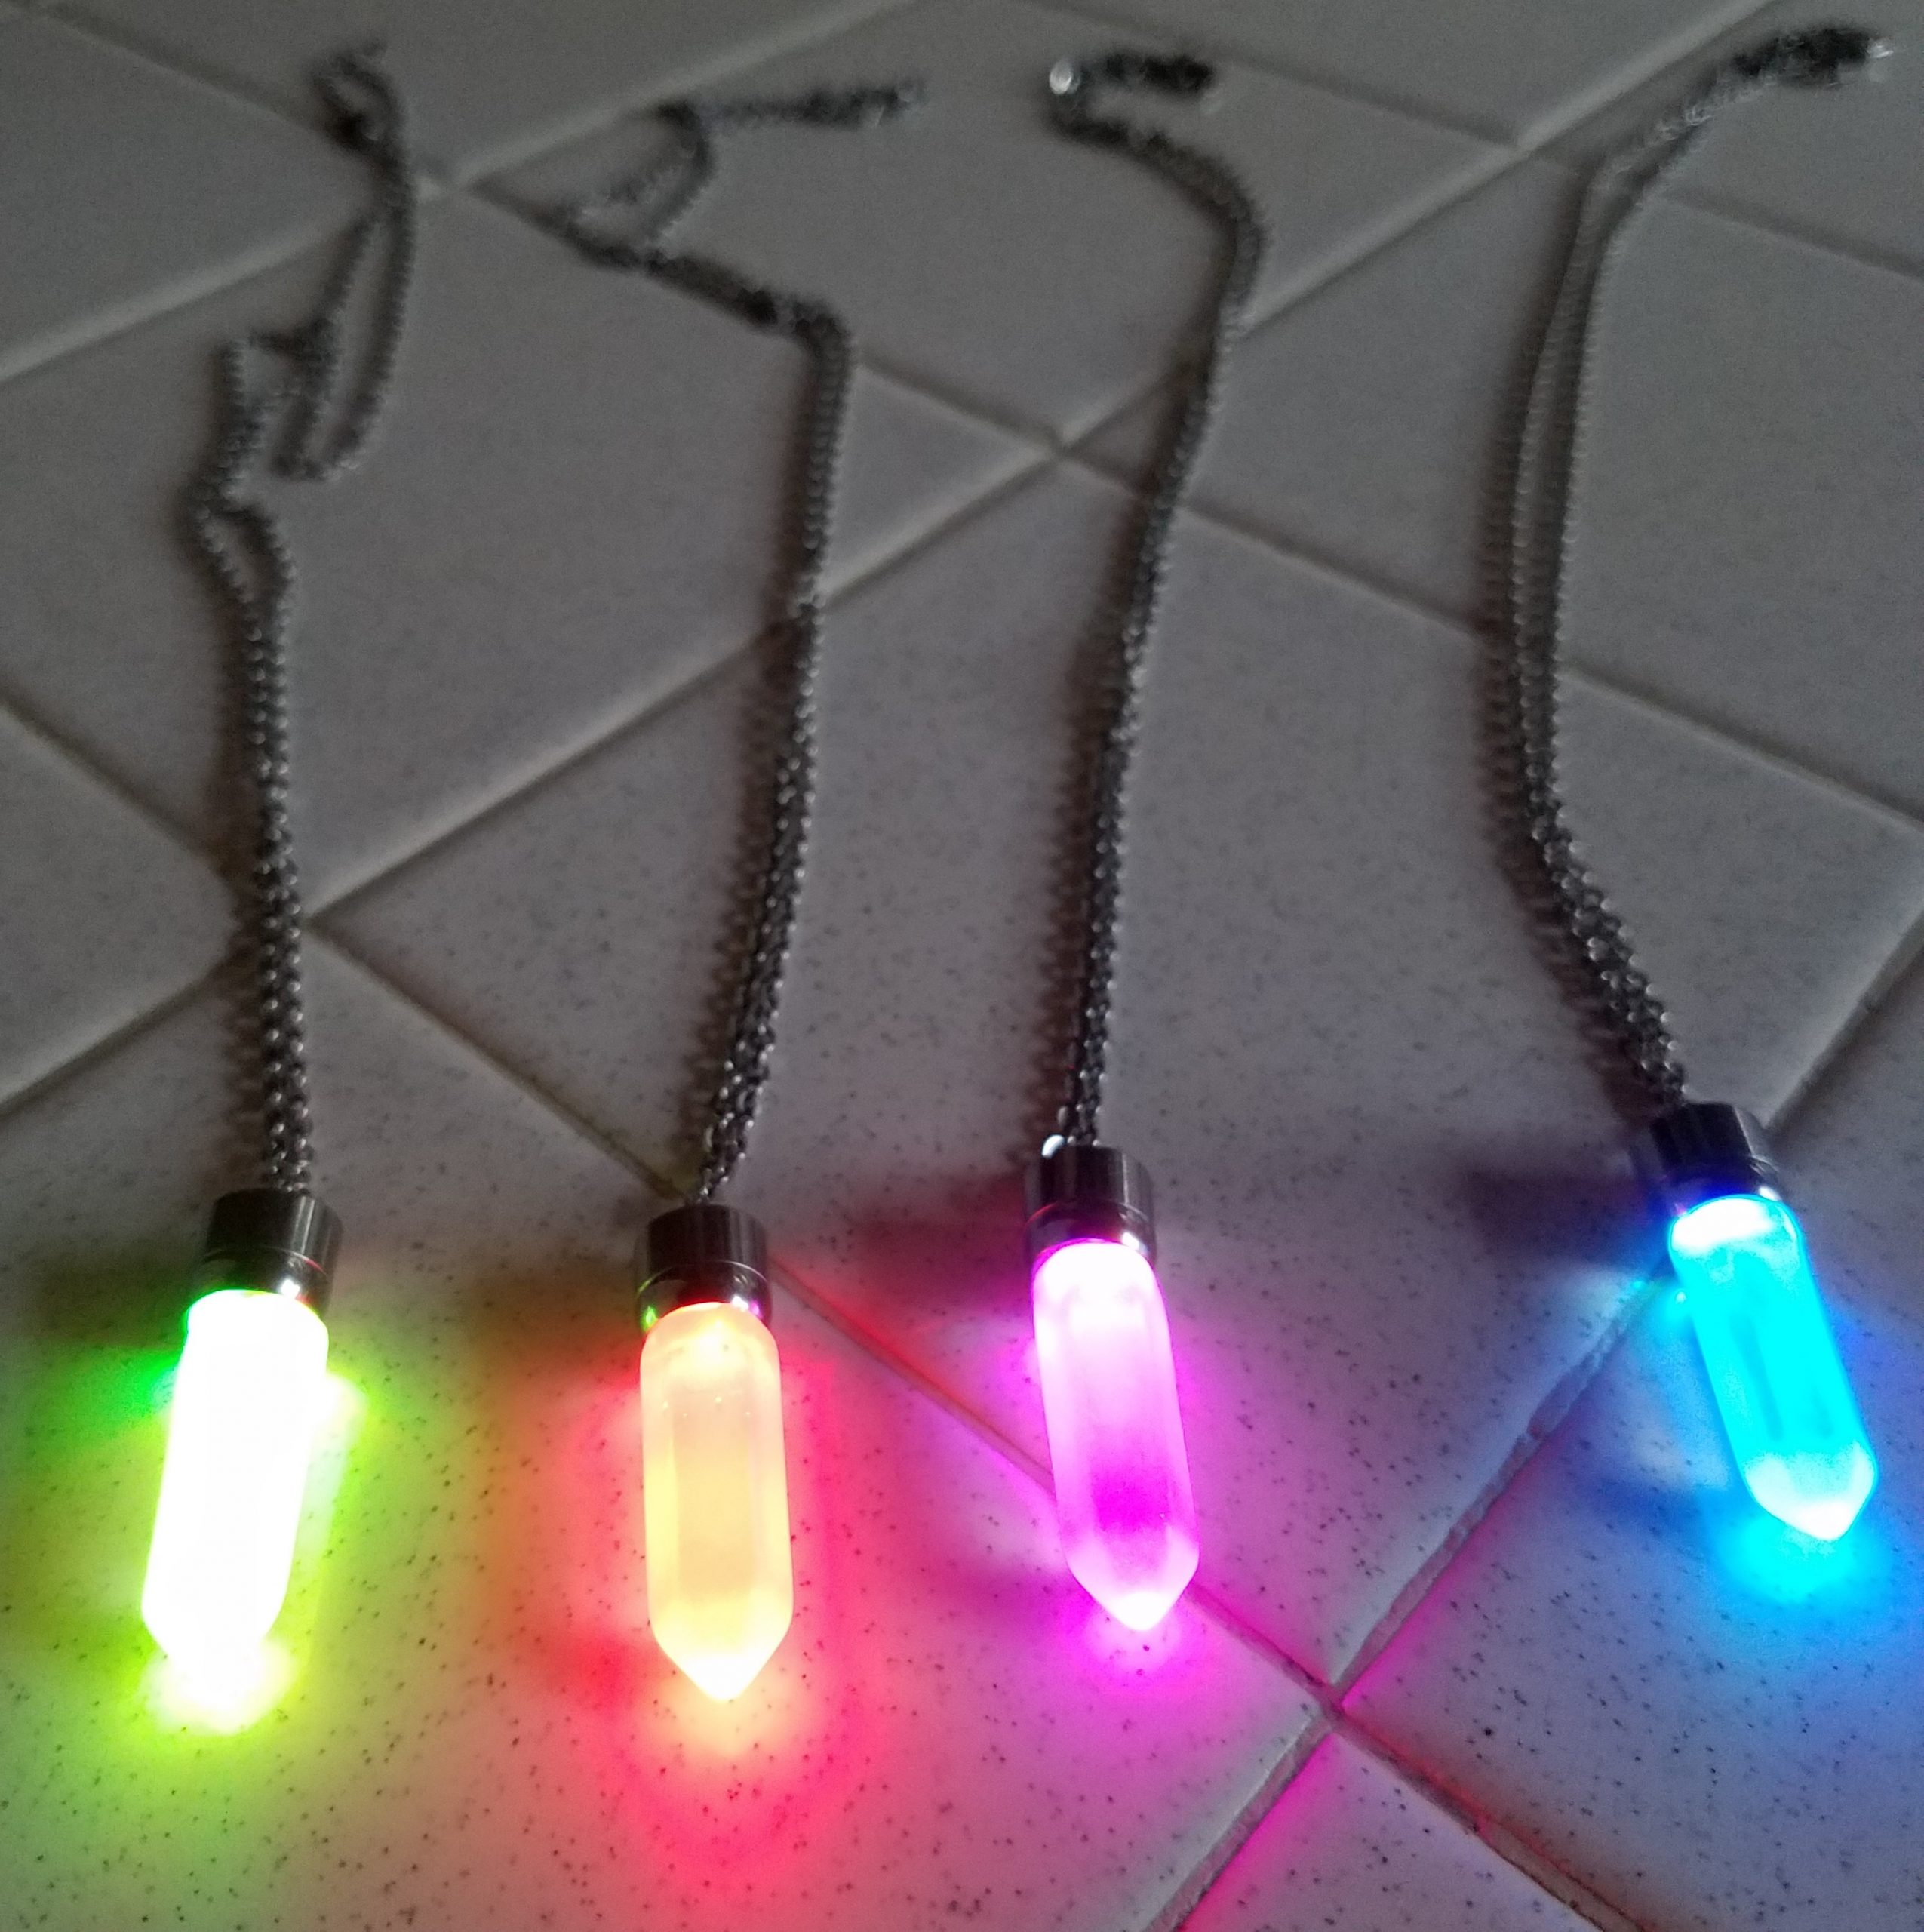 LED Light up Crystal Pendant Necklace | Eternity LED Glow